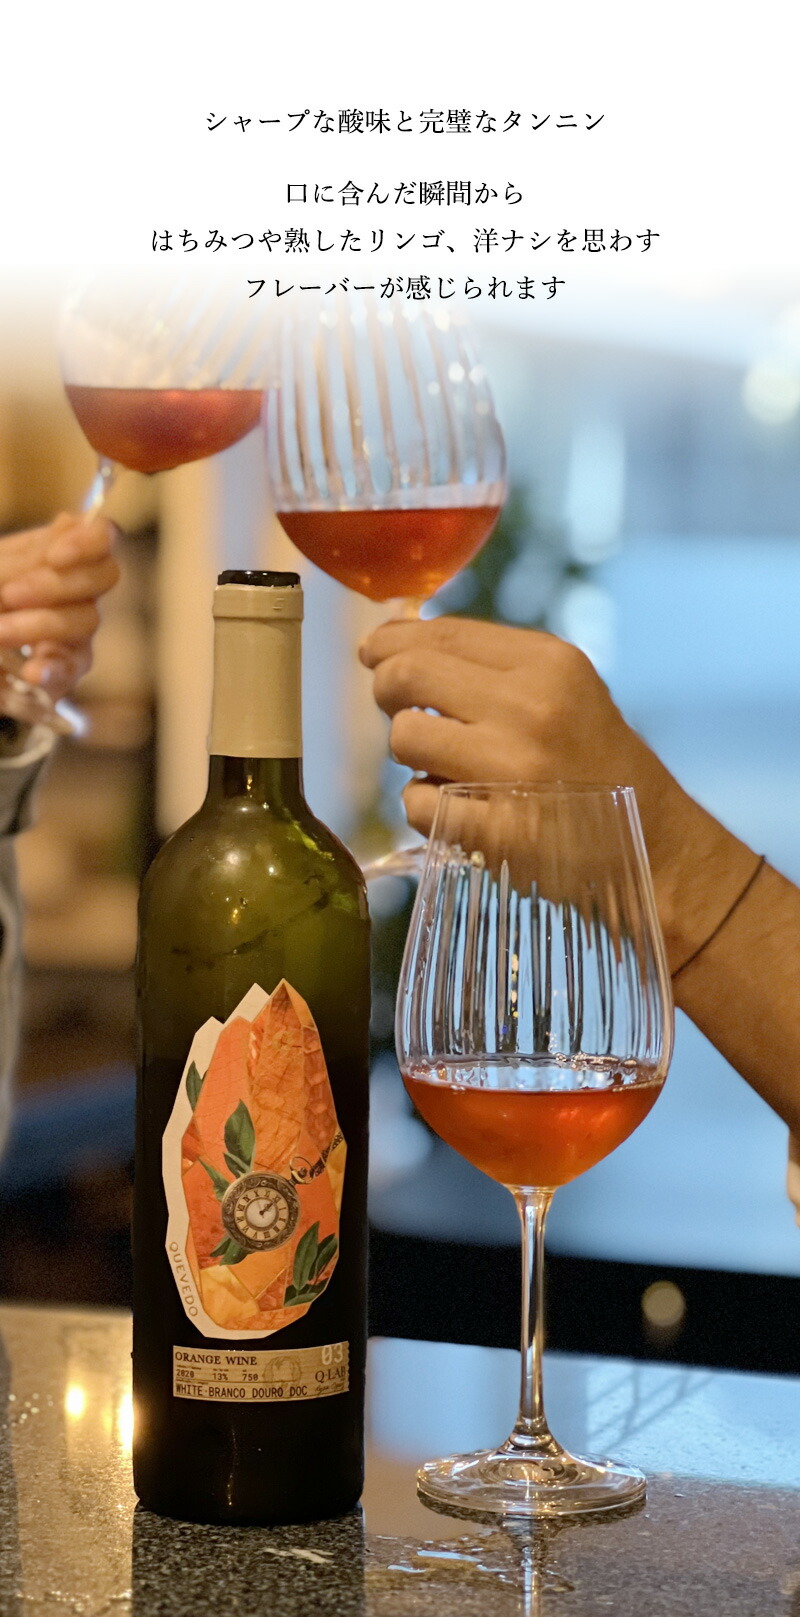 ケヴェド オレンジワイン[2020]【白】750ml  辛口 白ワイン ドウロ地方 直輸入 ポルトガルワイン